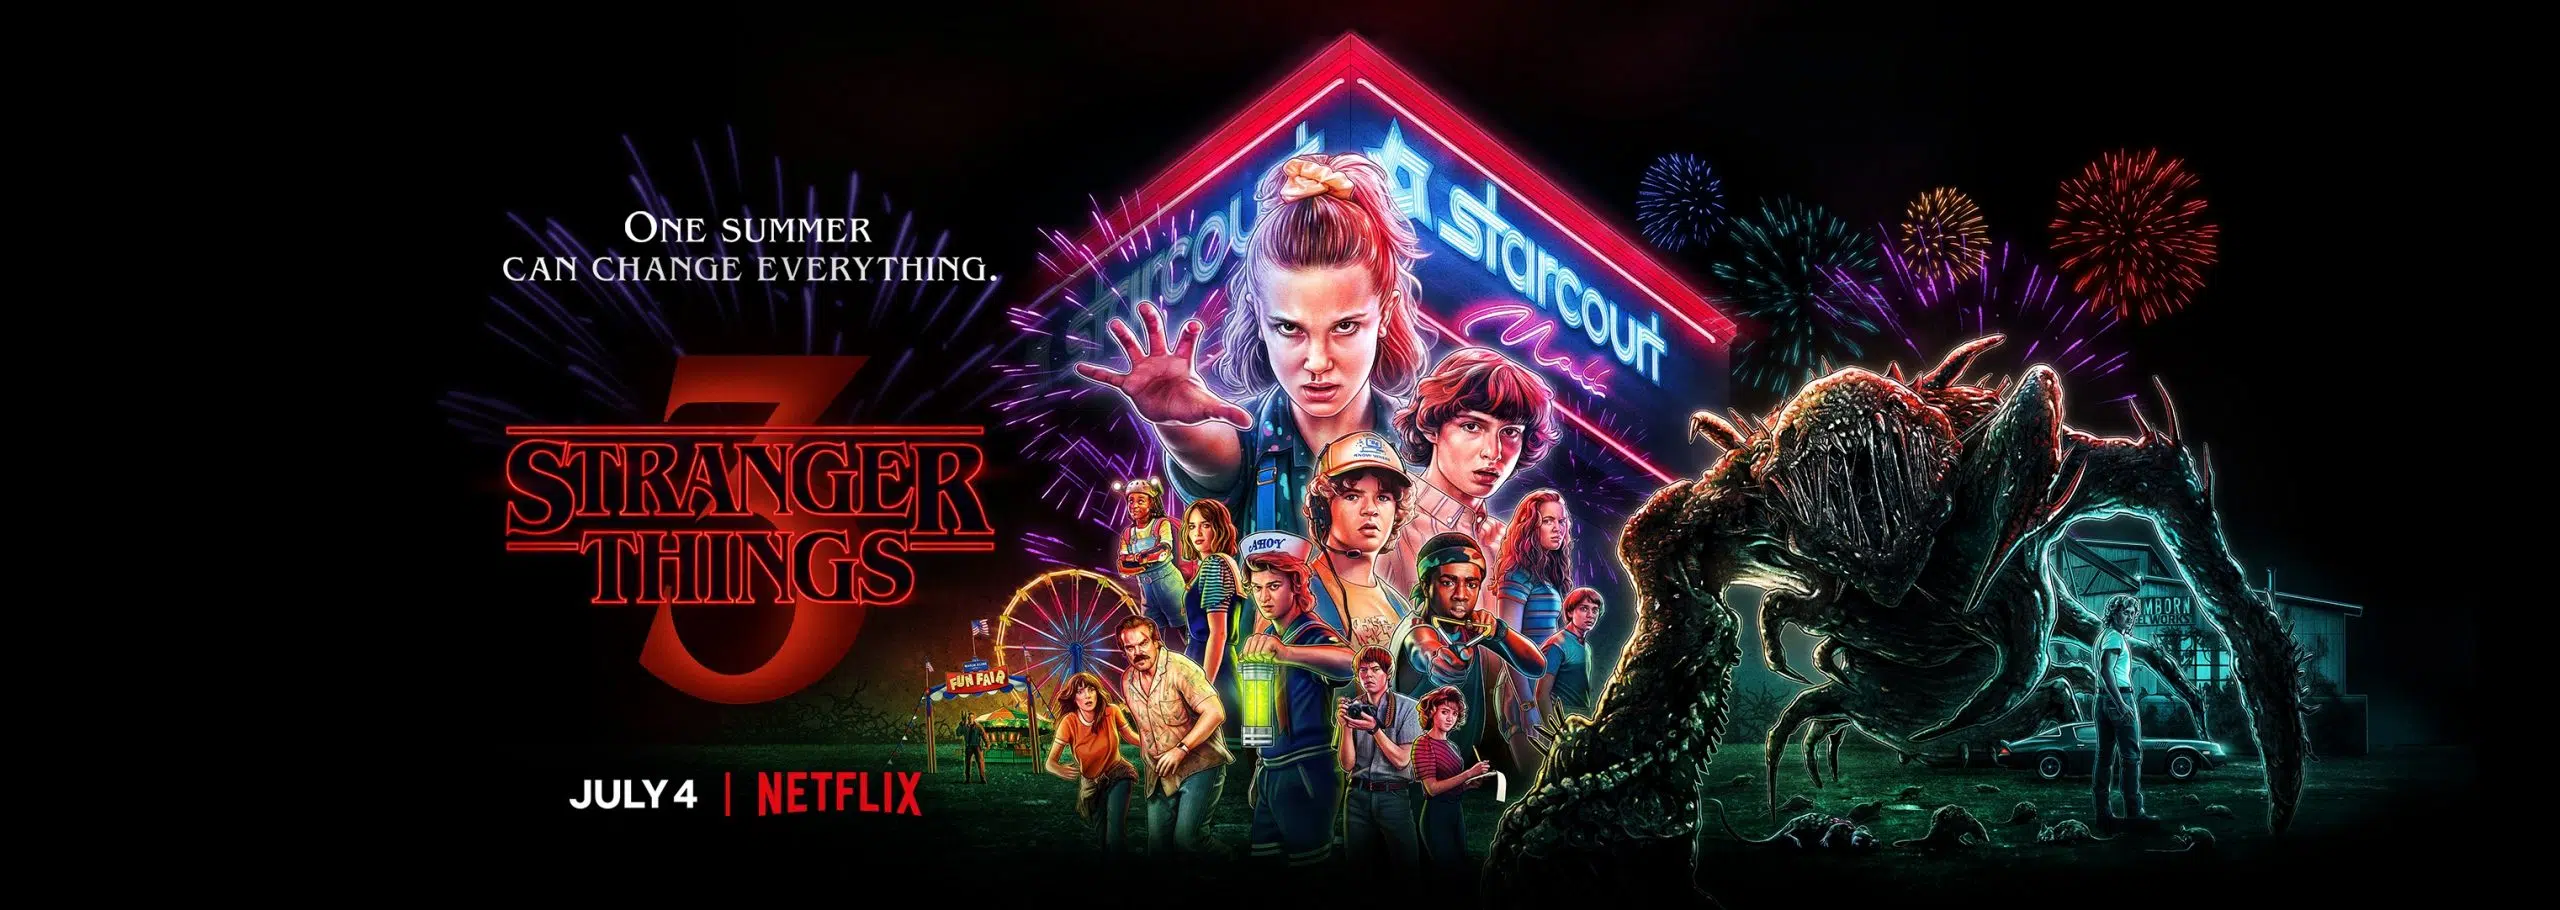 Stranger Things 2 Recap - Netflix